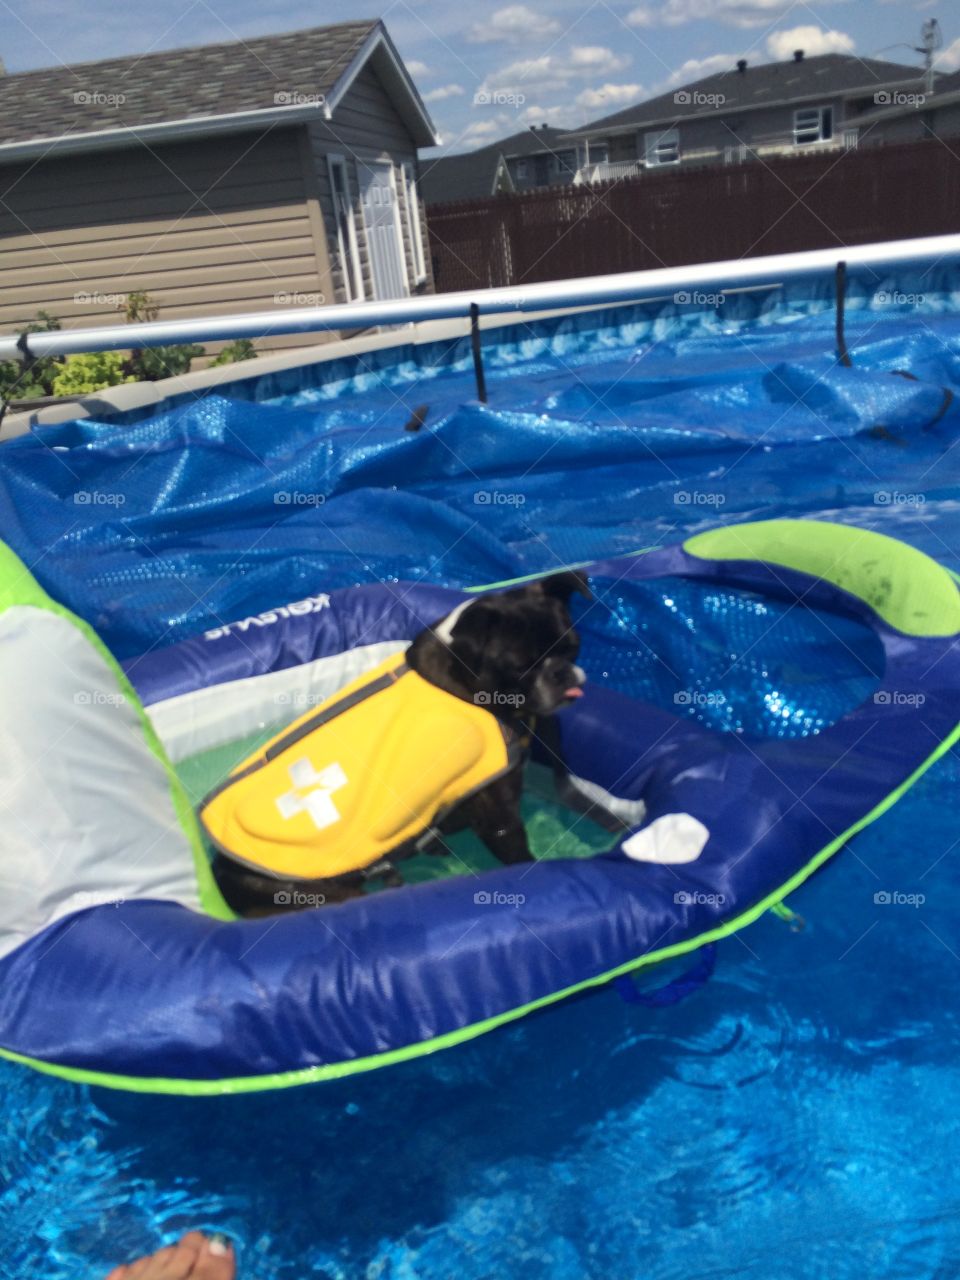 Dog , summer, pool, pug, pool, pool chair